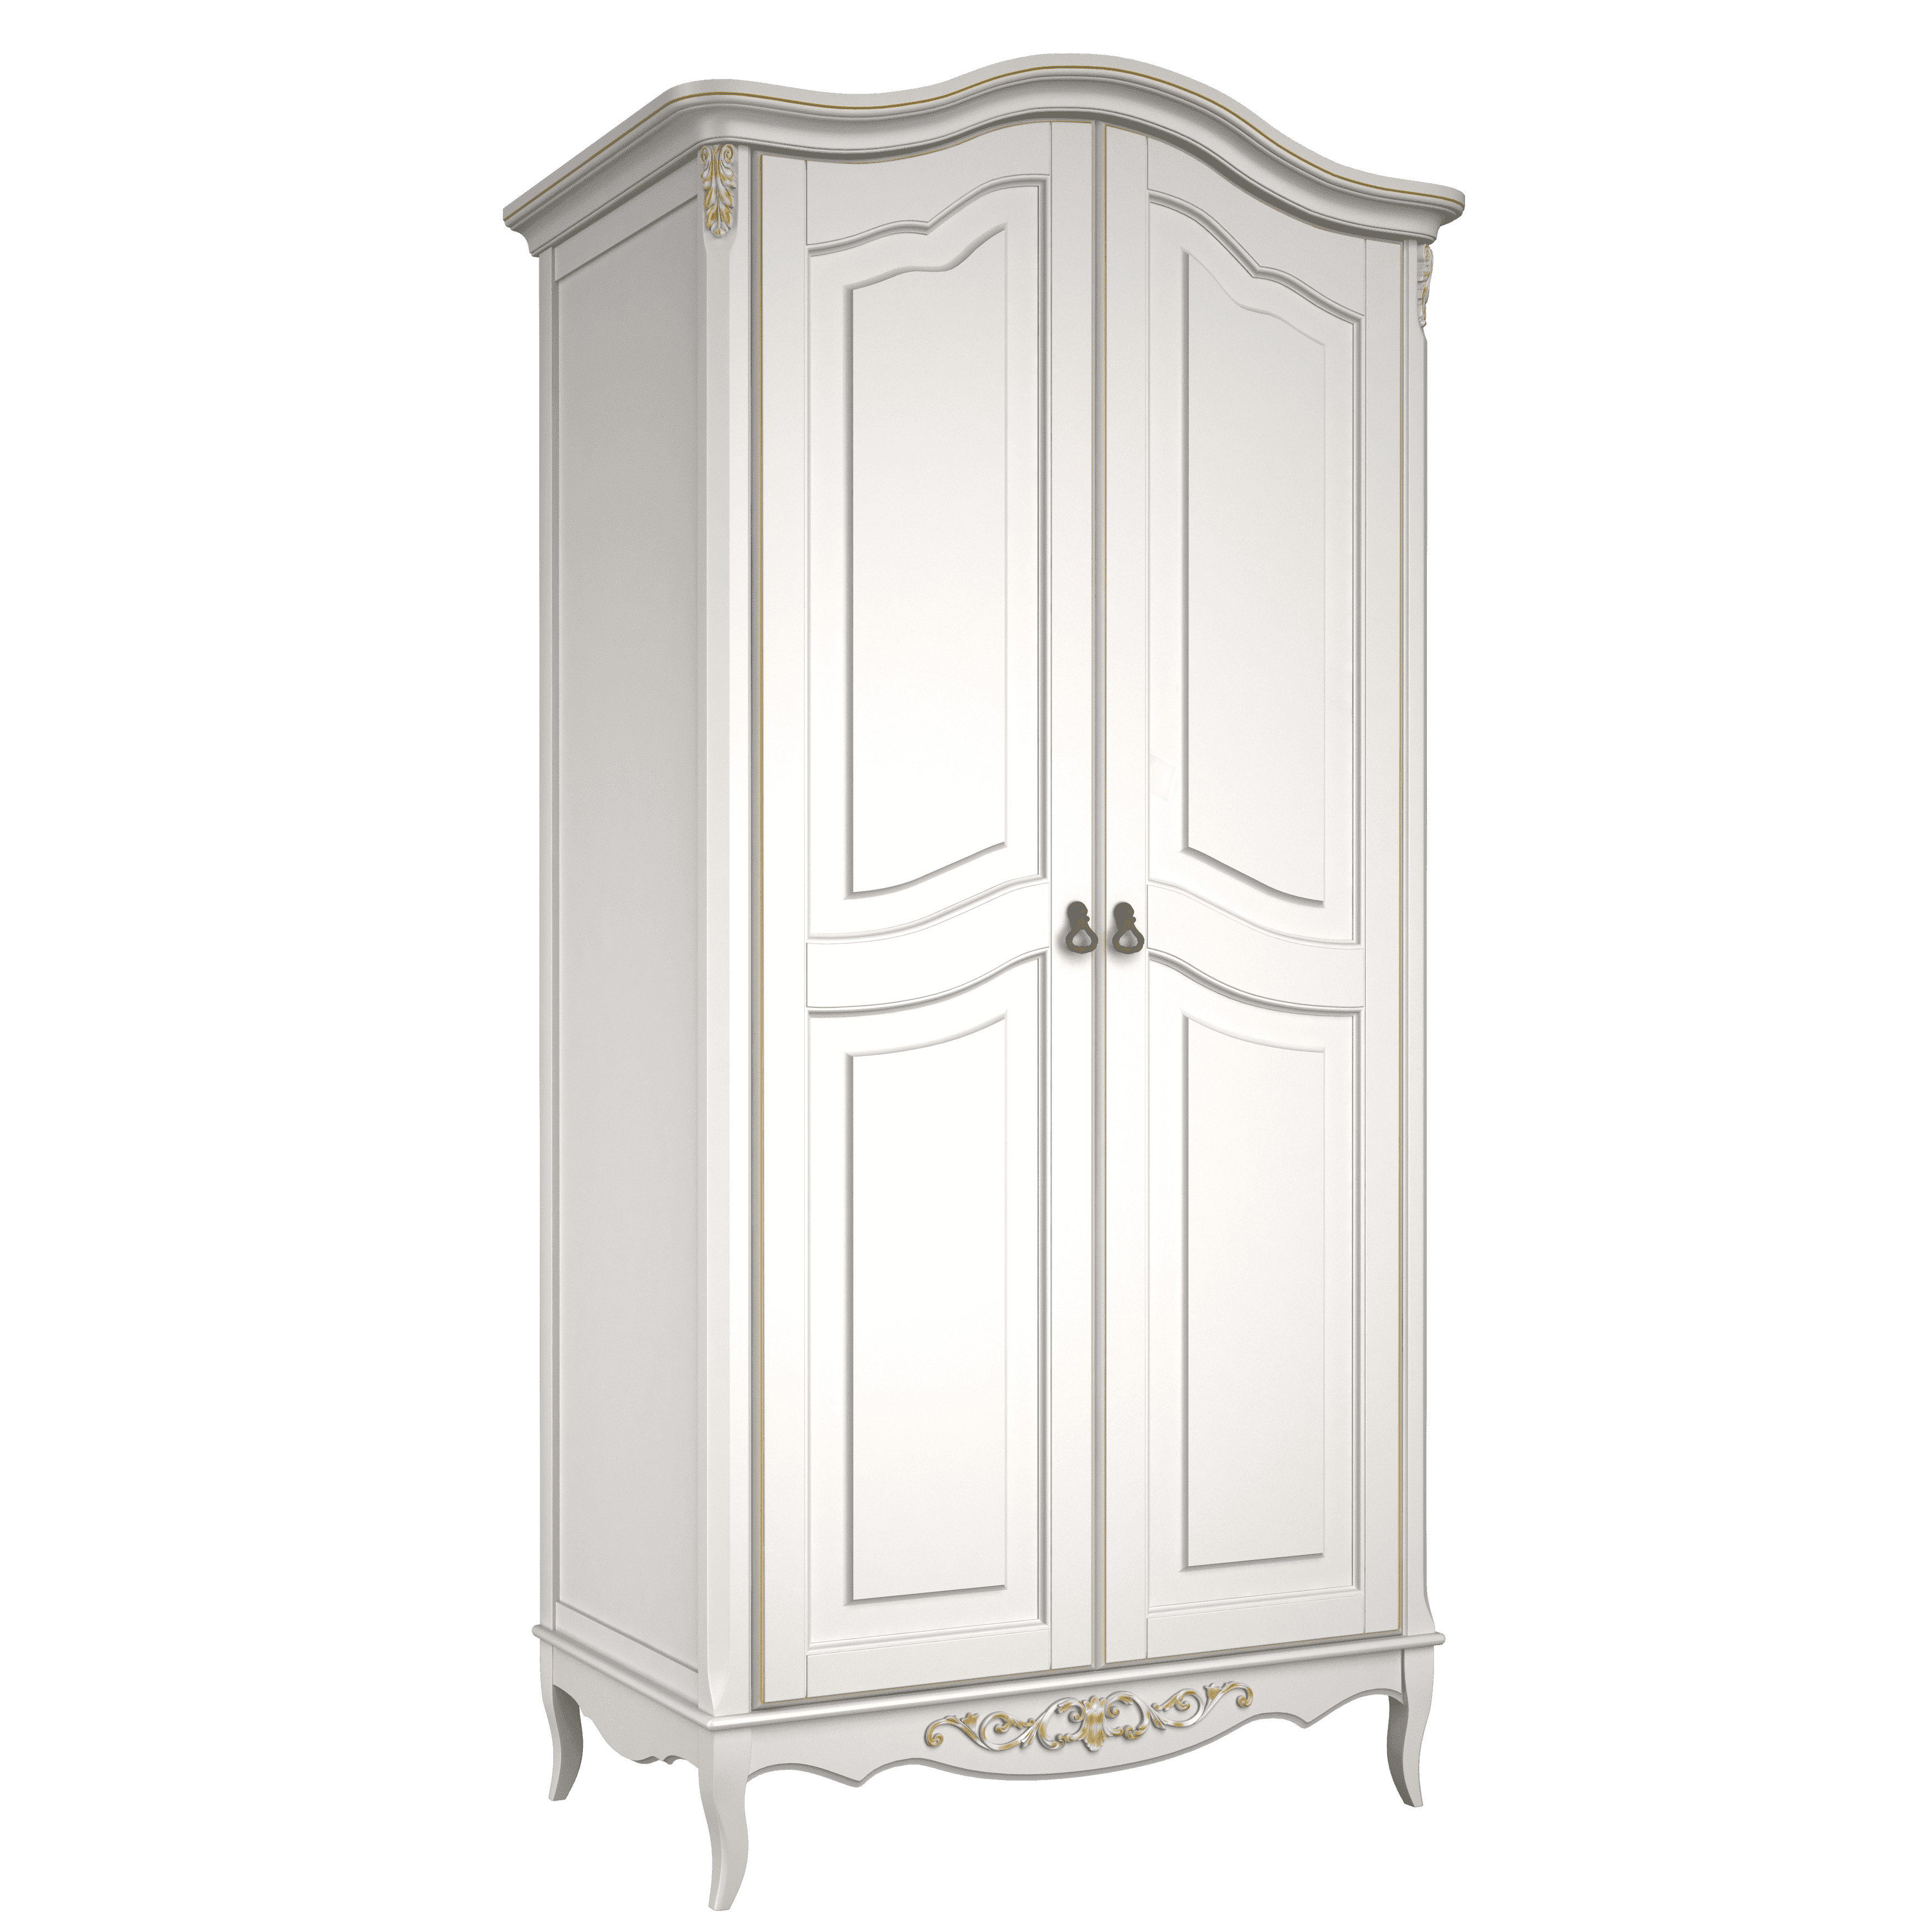 Шкаф платяной Aletan Provence, 2-х дверный, цвет: слоновая кость-золото (B802G)B802G